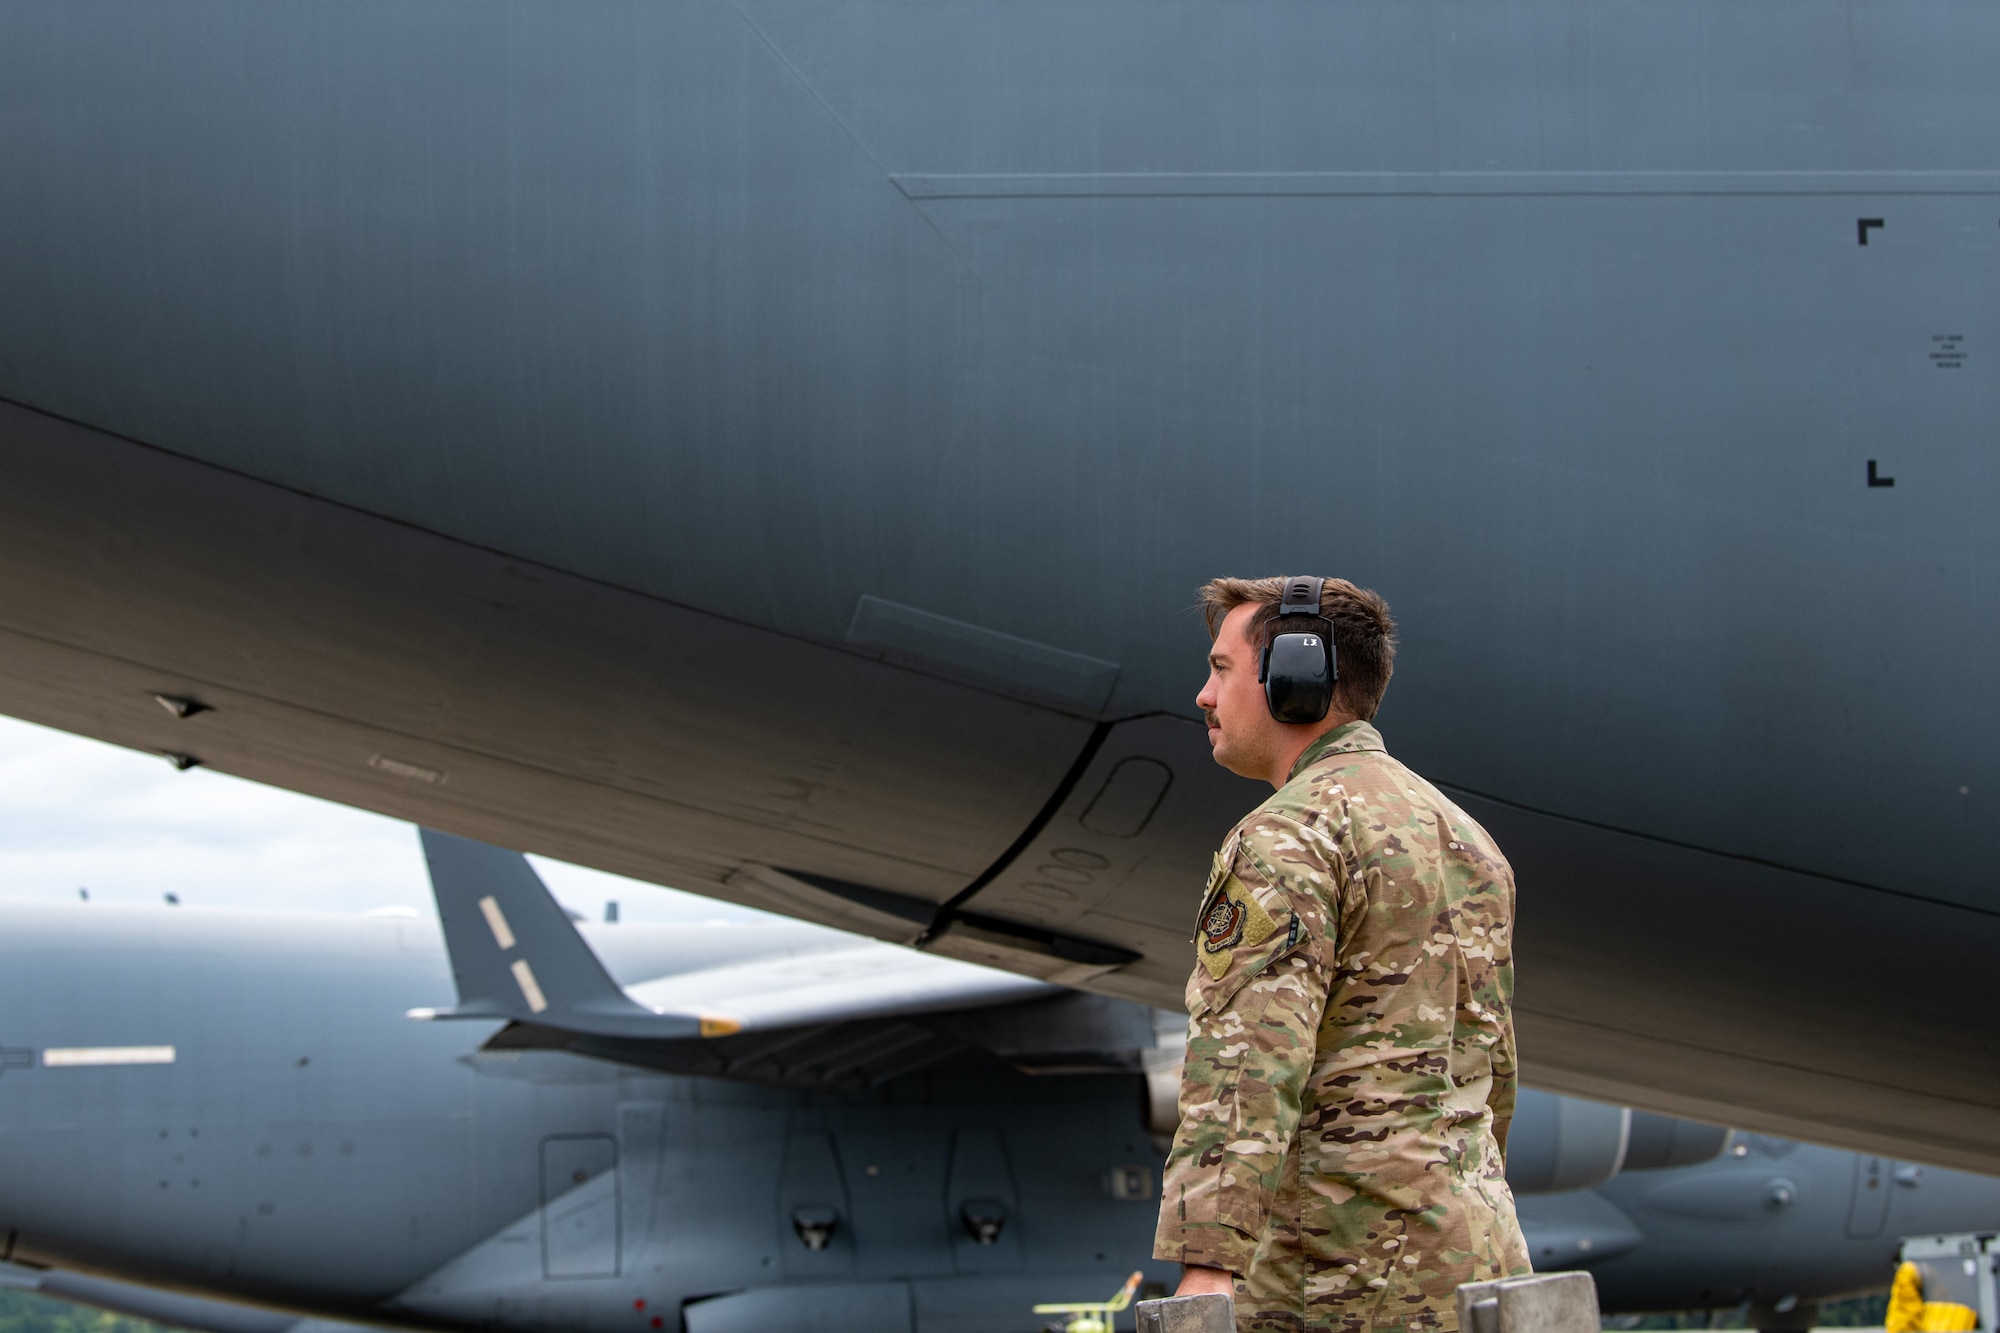 An Airman stands next to an aircraft.